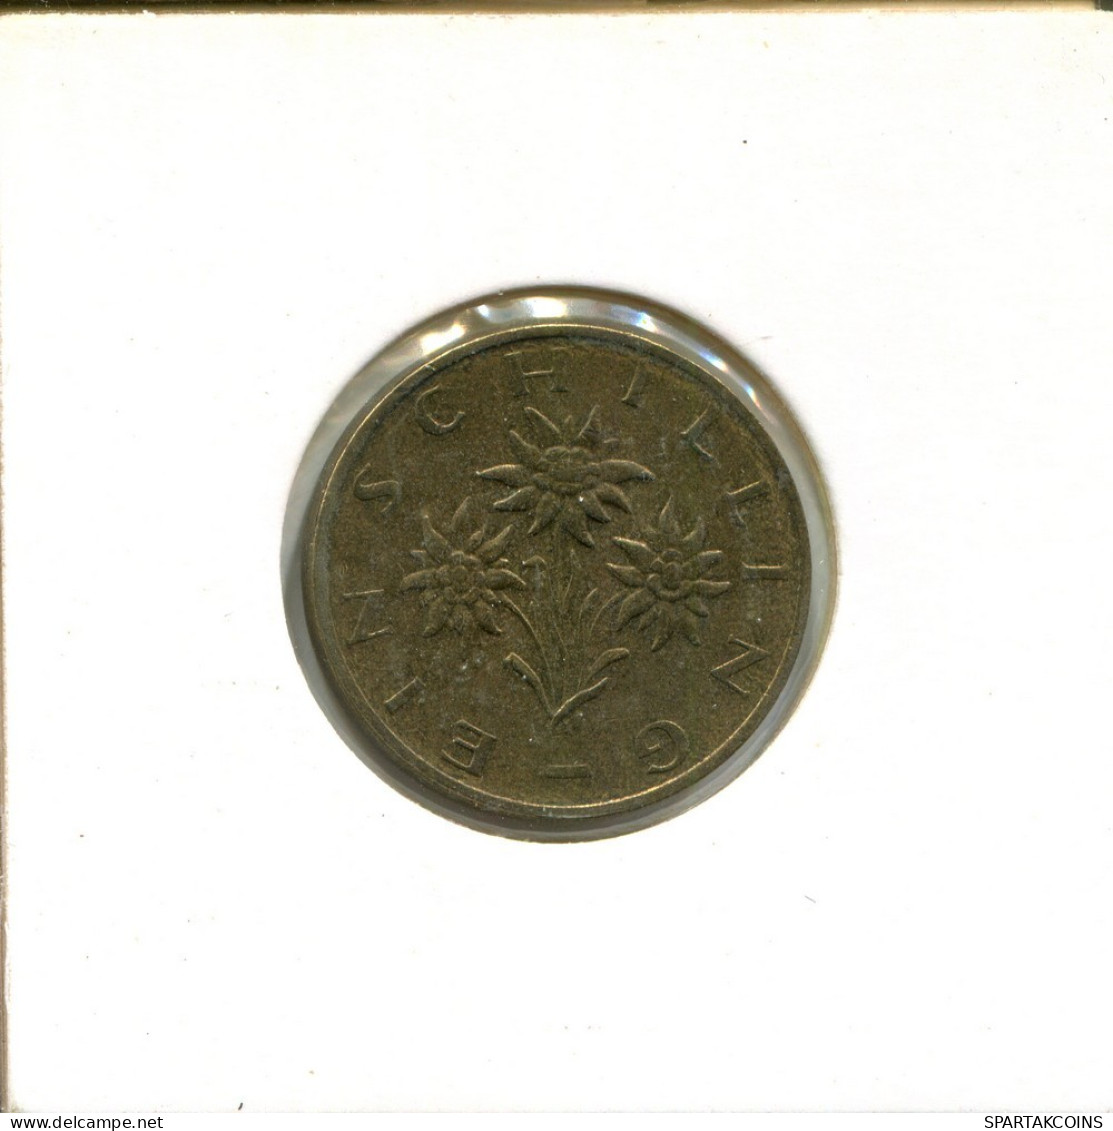 1 SCHILLING 1986 AUSTRIA Coin #AT646.U.A - Oostenrijk